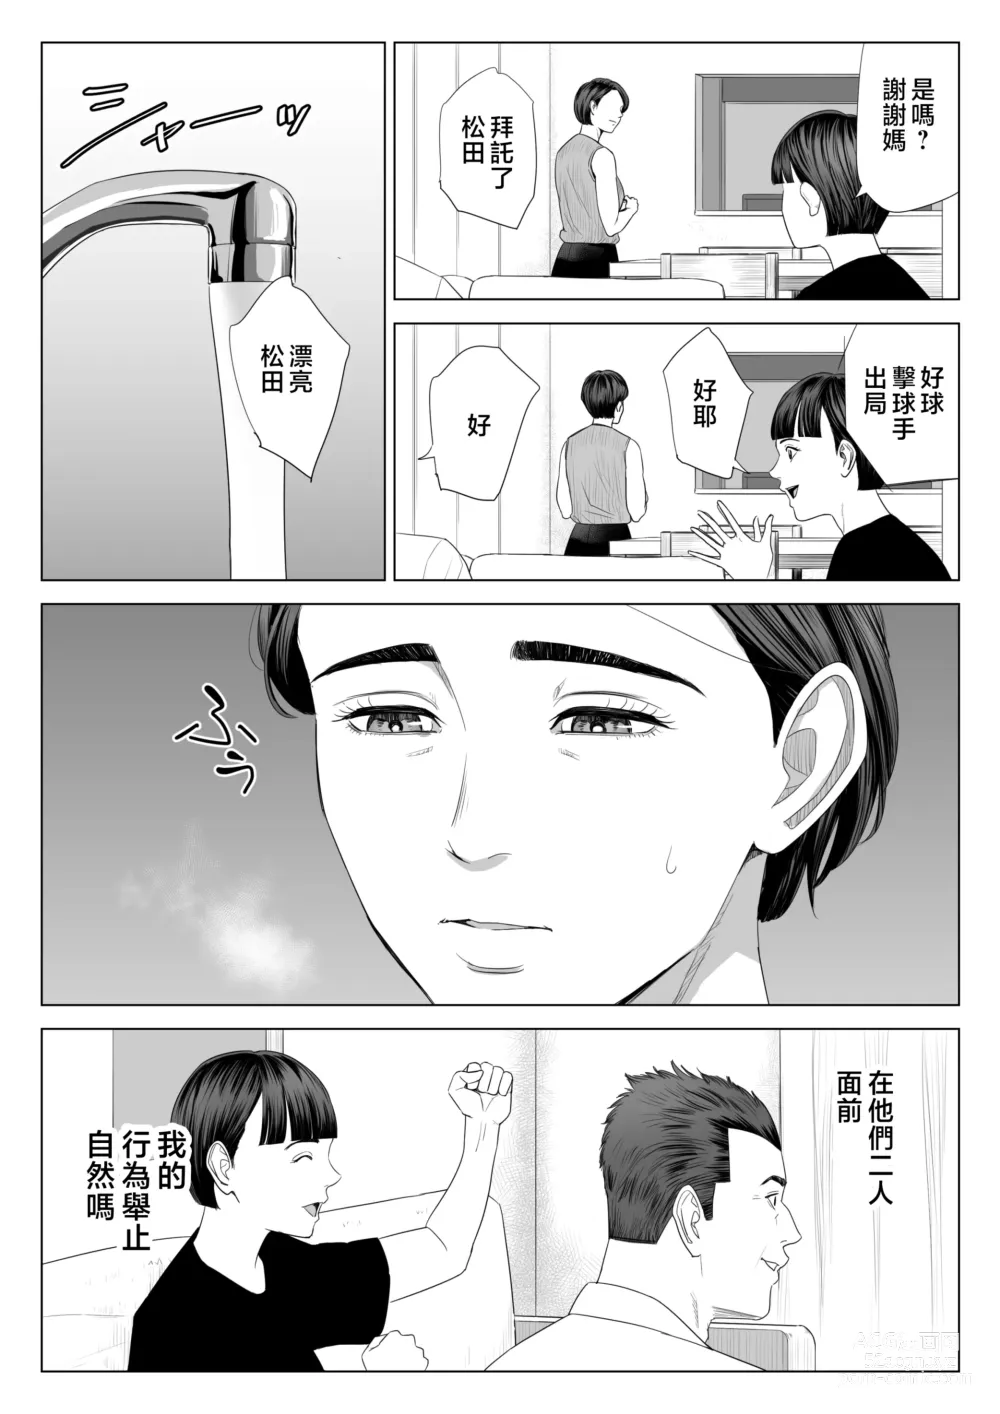 Page 57 of doujinshi Gibo no Tsukaeru Karada.